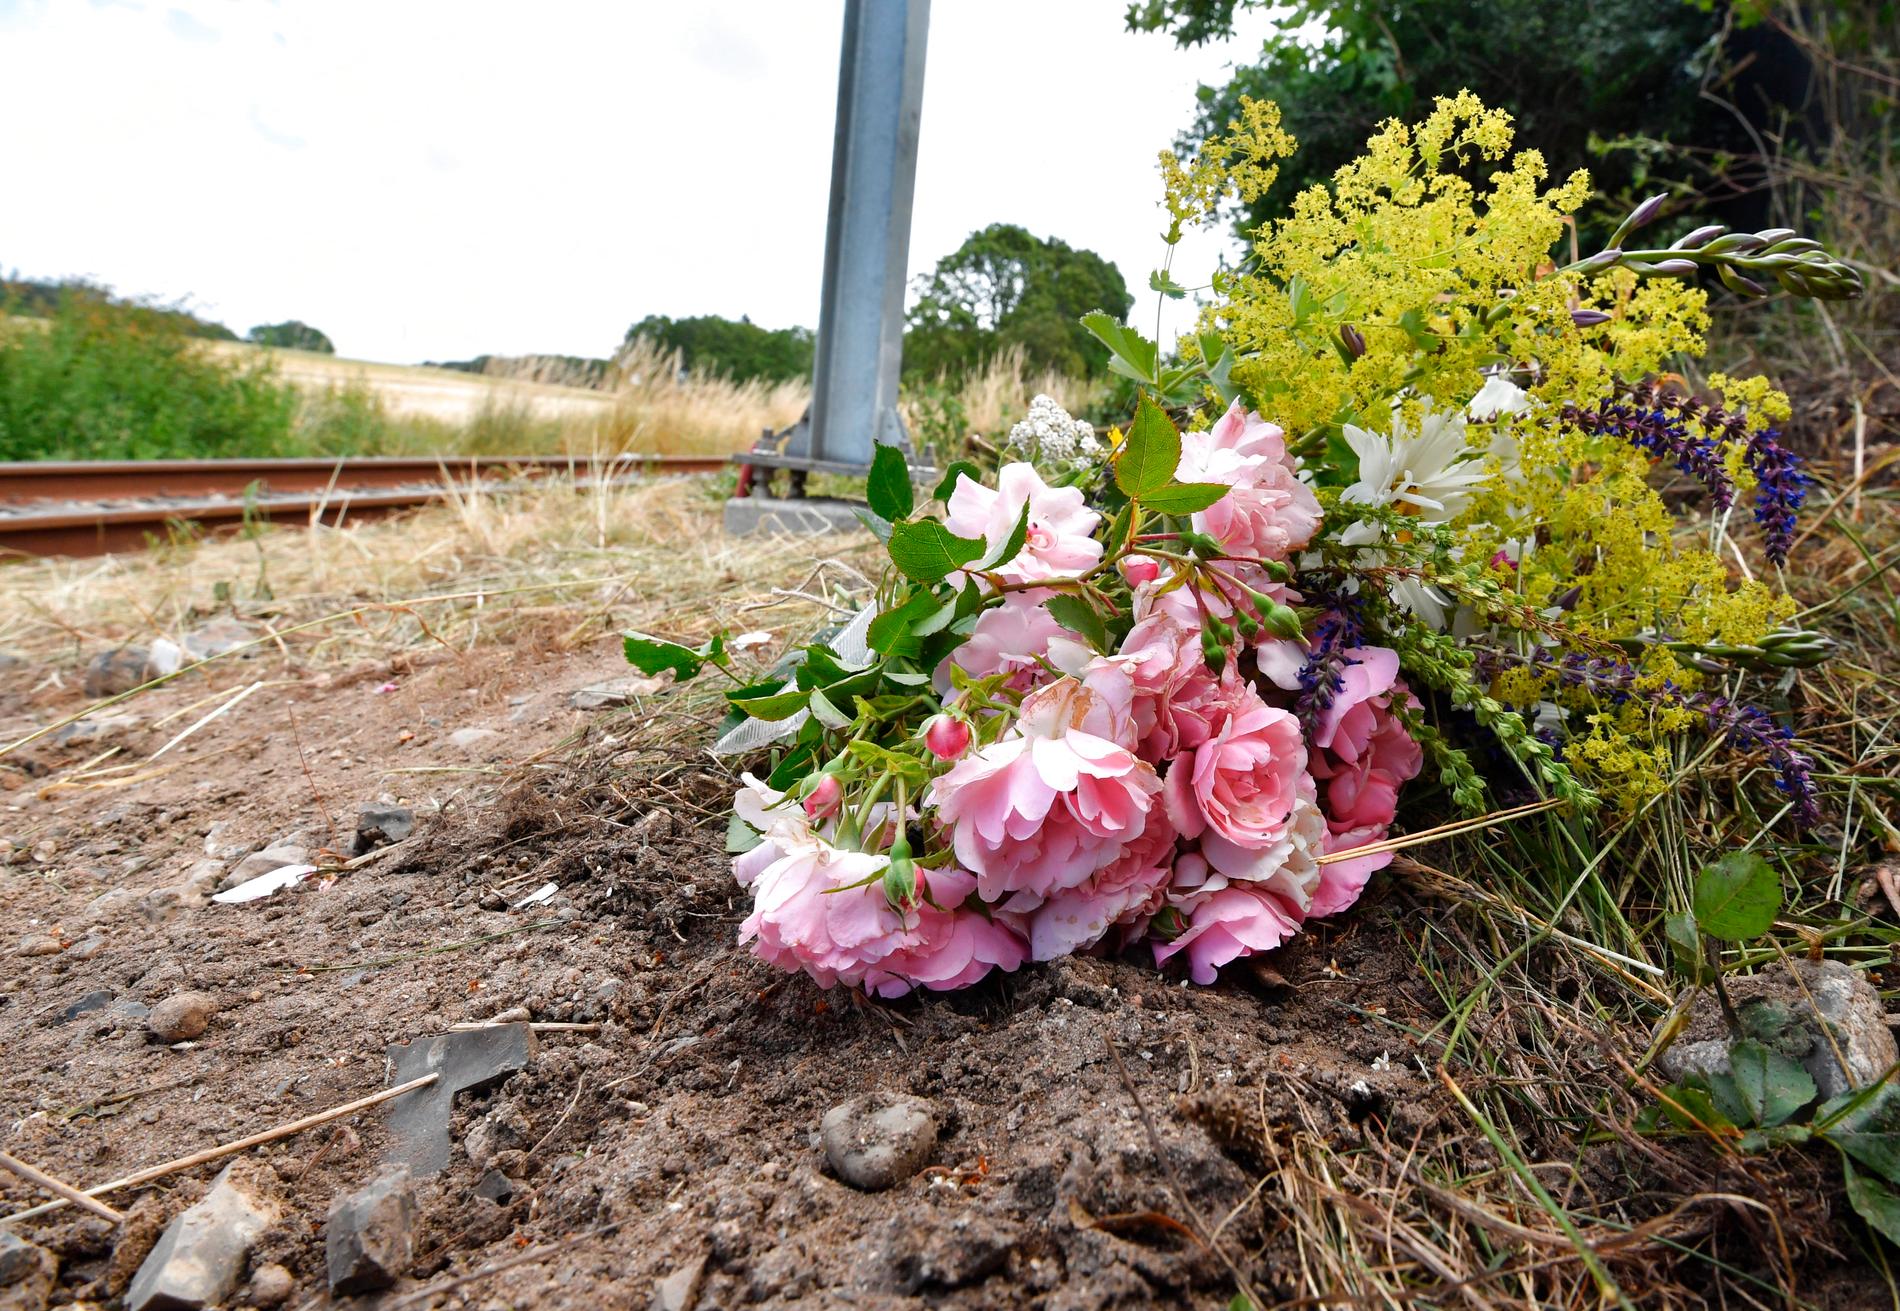 OMKOM: Naboer har lagt ned blomster der en norsk mann og hans sønn mistet livet i en ulykke lørdag mellom en personbil og et letbanetog i Trustrup på Djursland. 